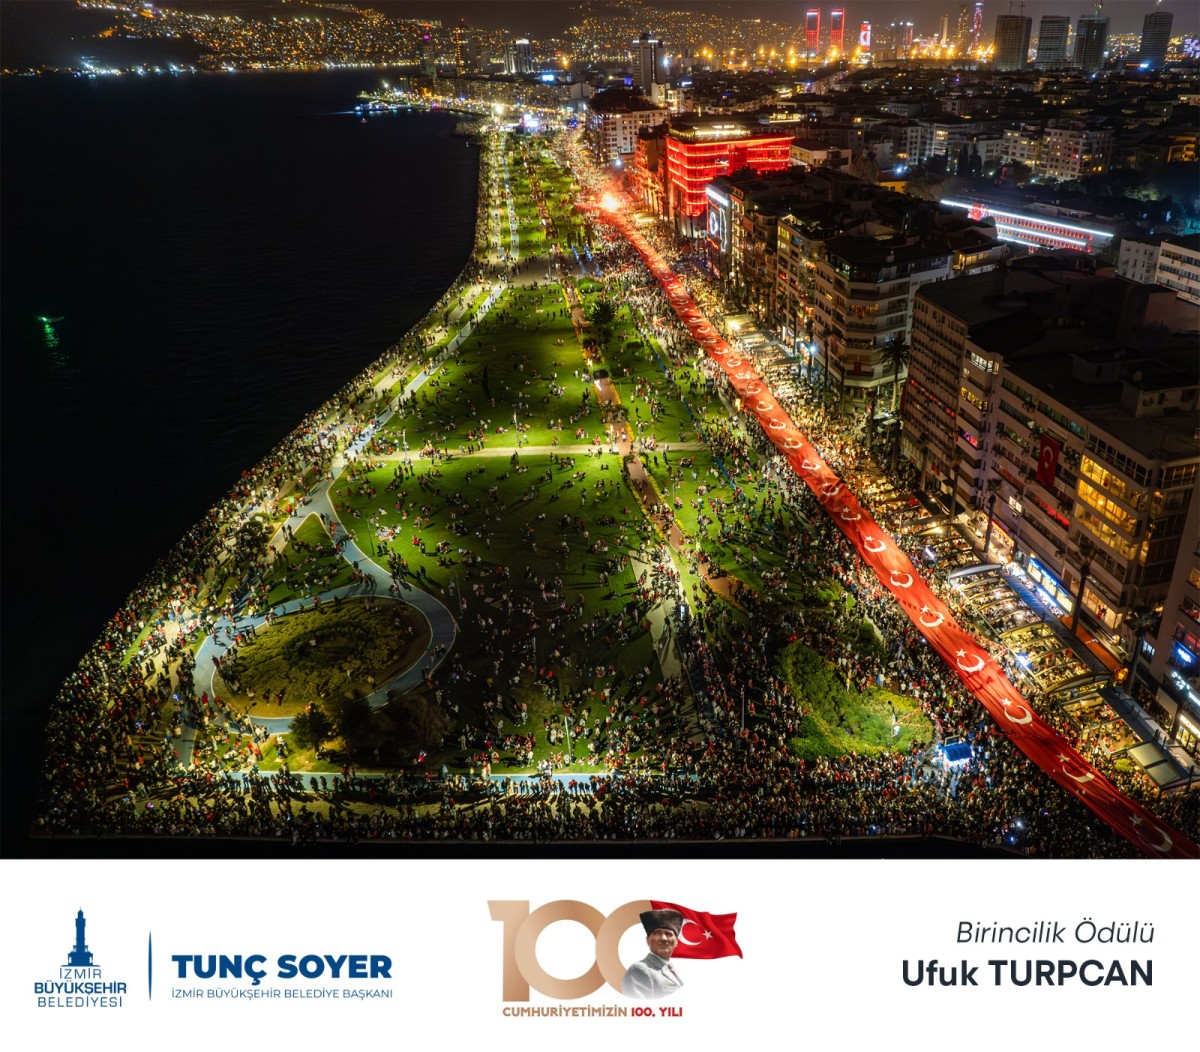 İzmir’de Cumhuriyet’in 100. Yıl Coşkusu Fotoğraf Yarışması sonuçlandı